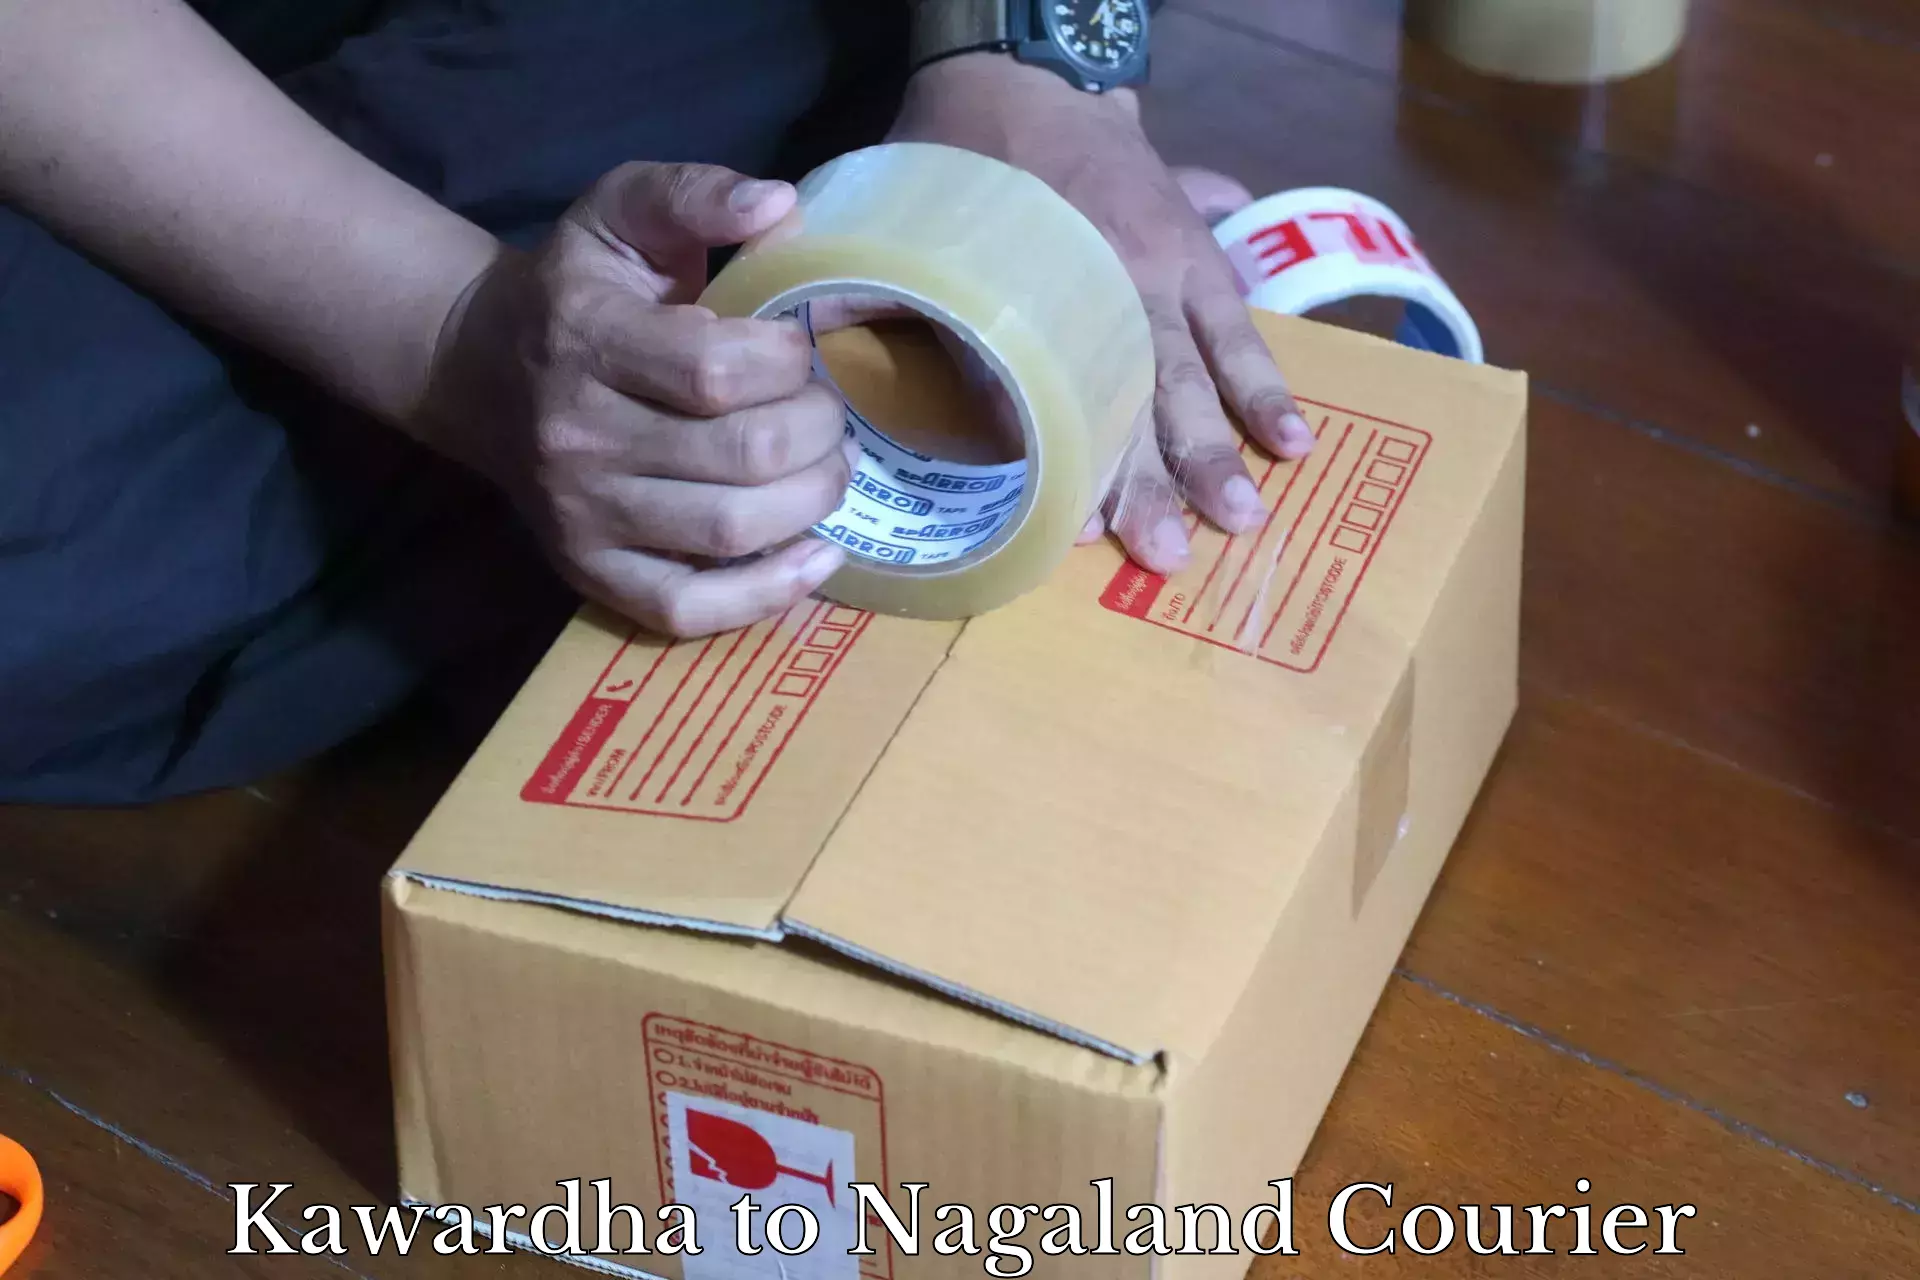 Same-day delivery solutions Kawardha to NIT Nagaland